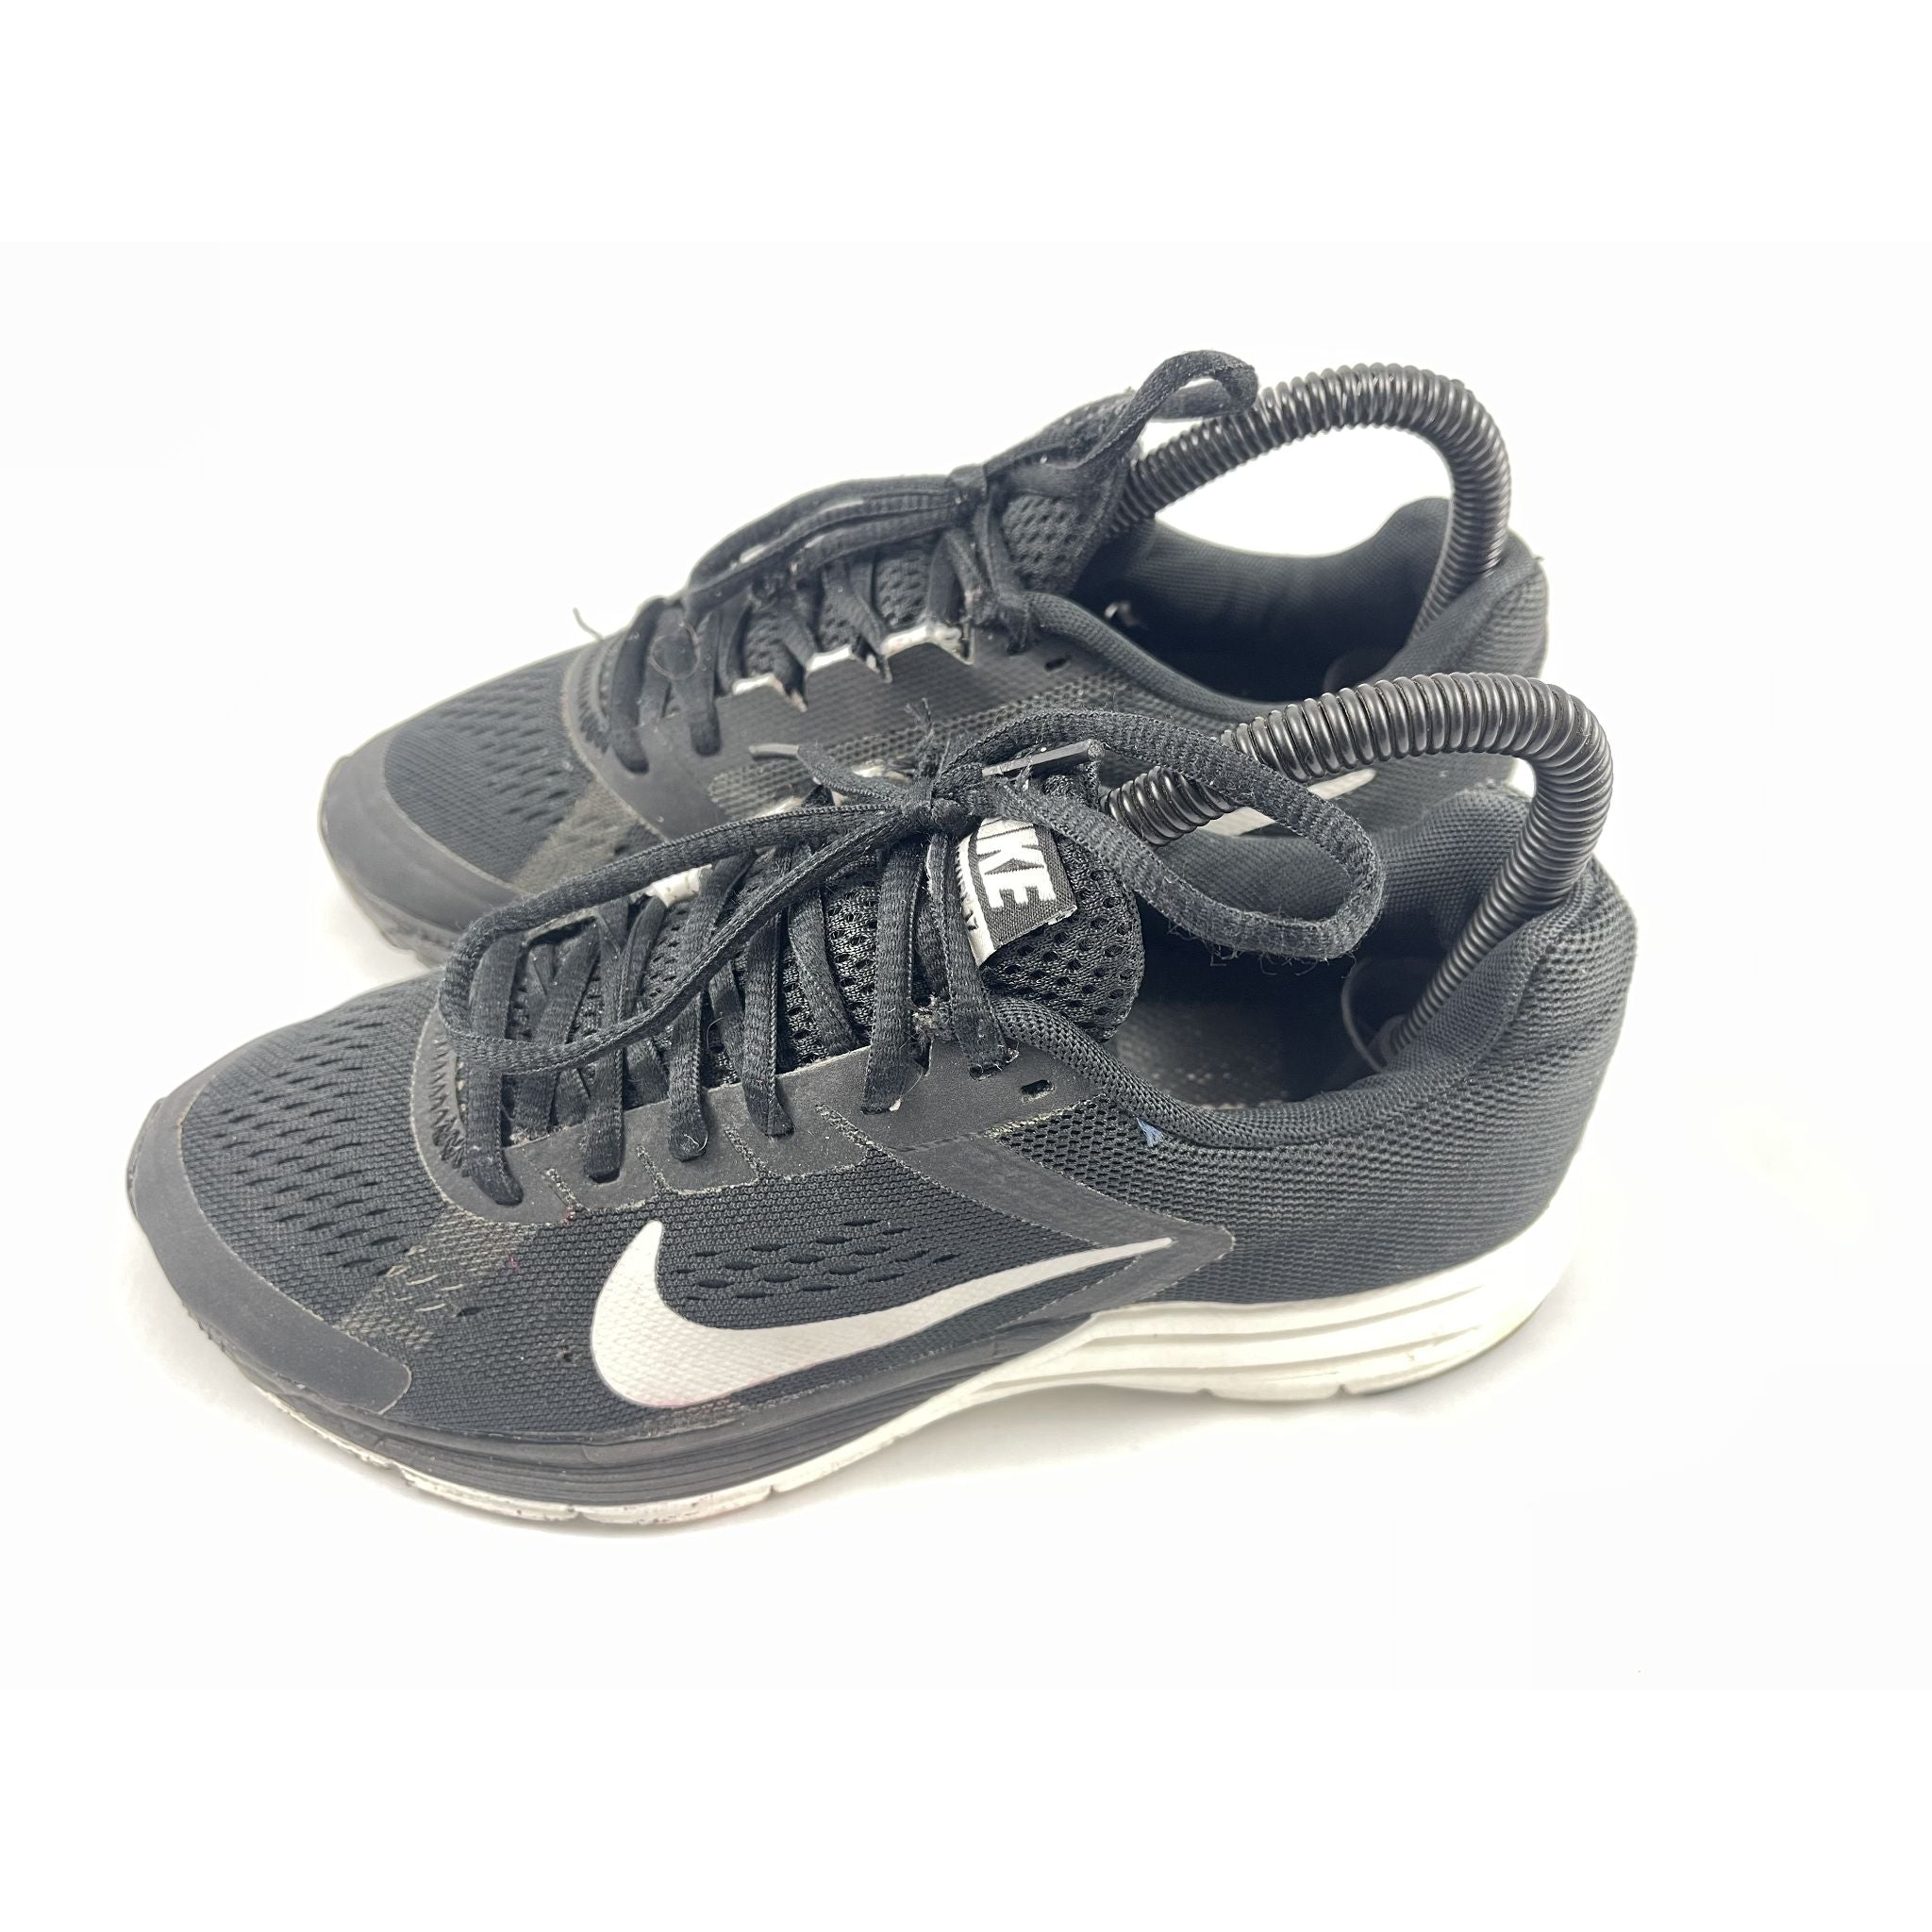 Black Nike Joggers